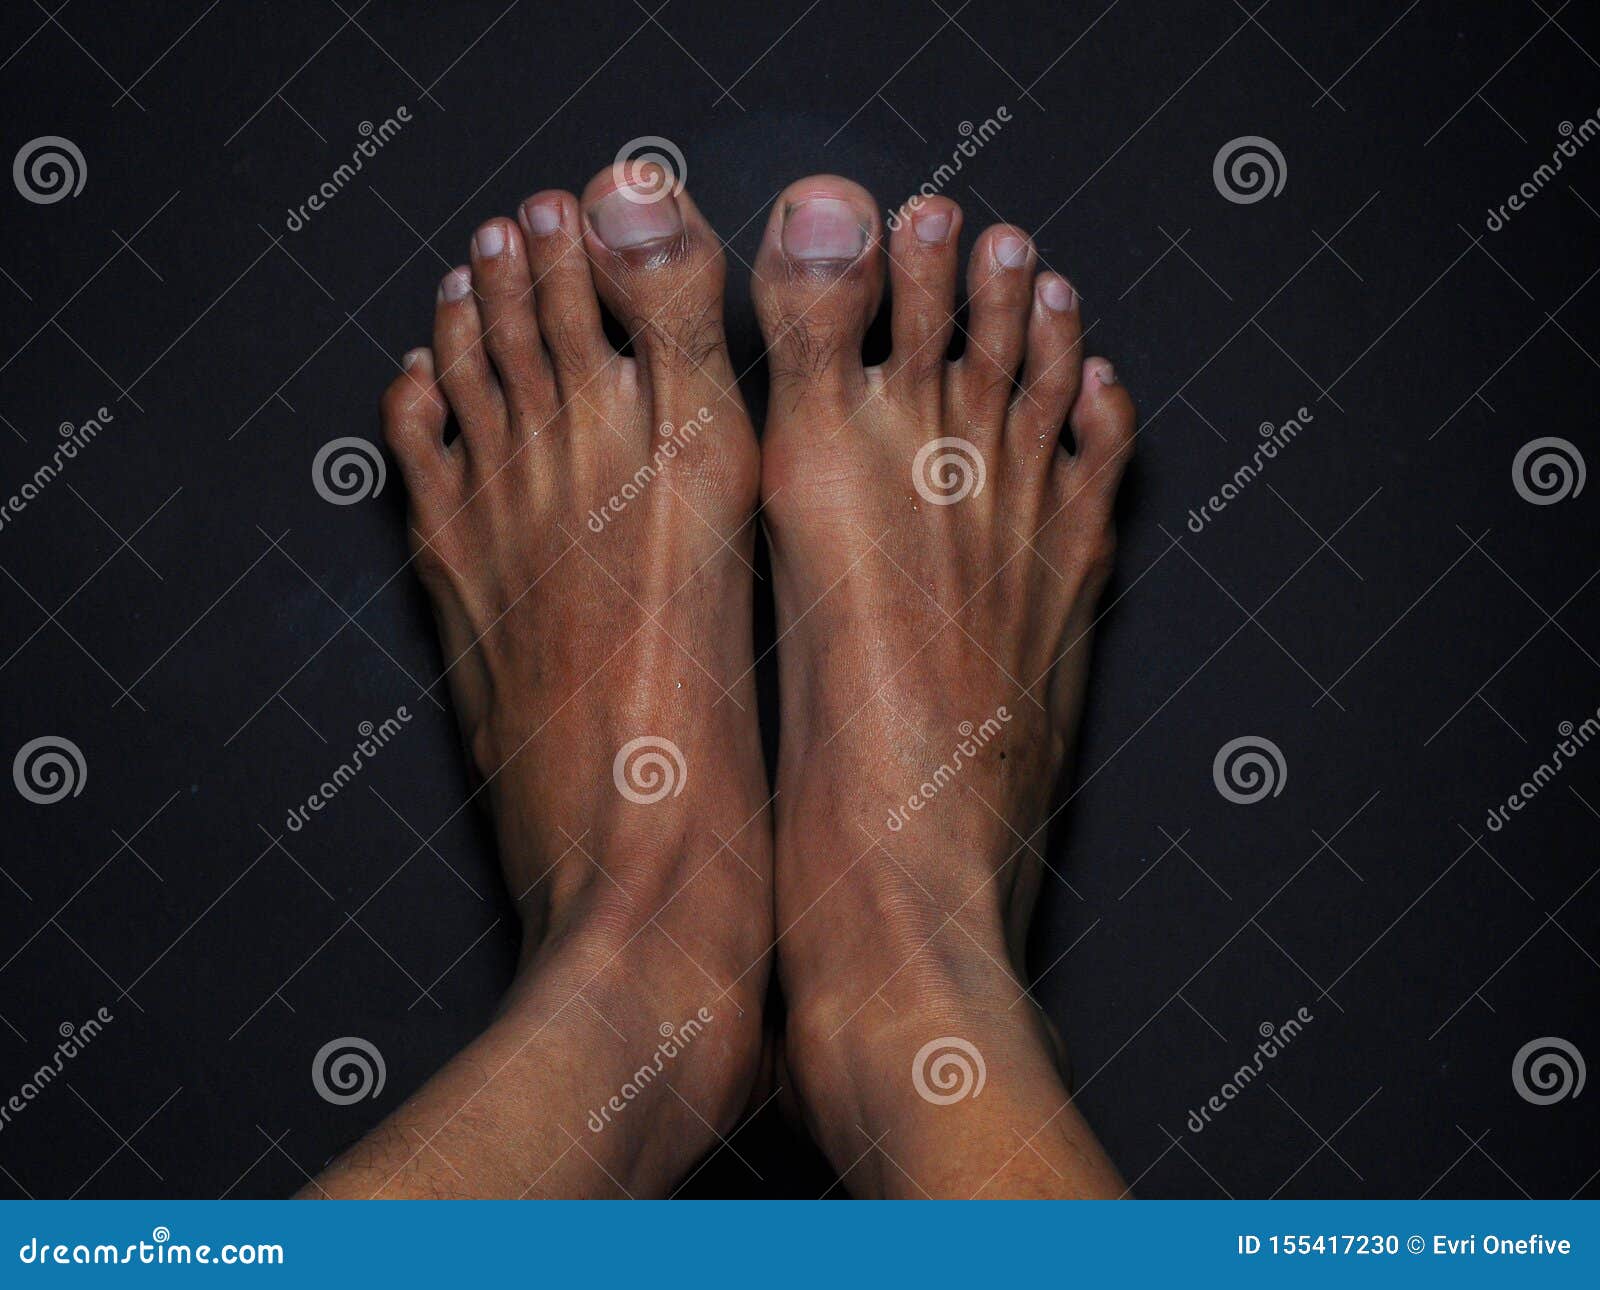 In face feet ebony 